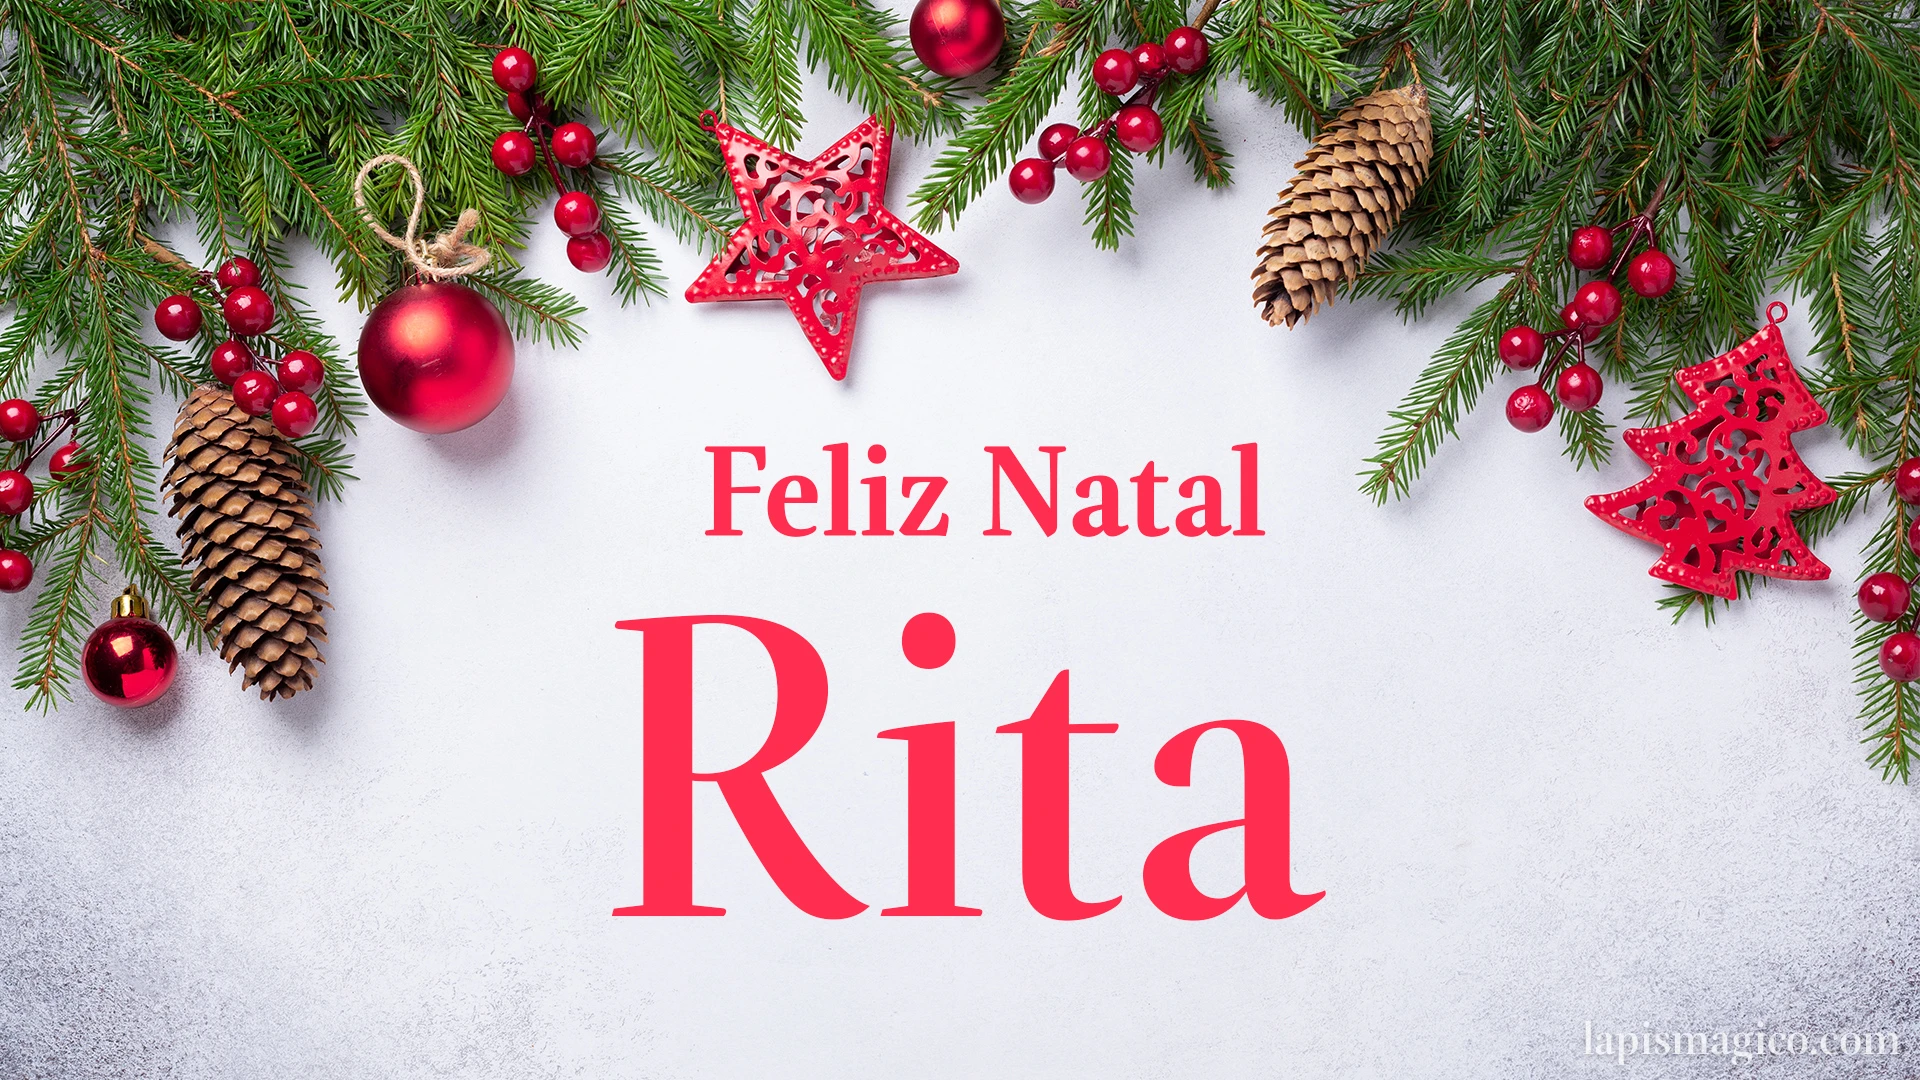 Oh Rita, cinco postais de Feliz Natal Postal com o teu nome